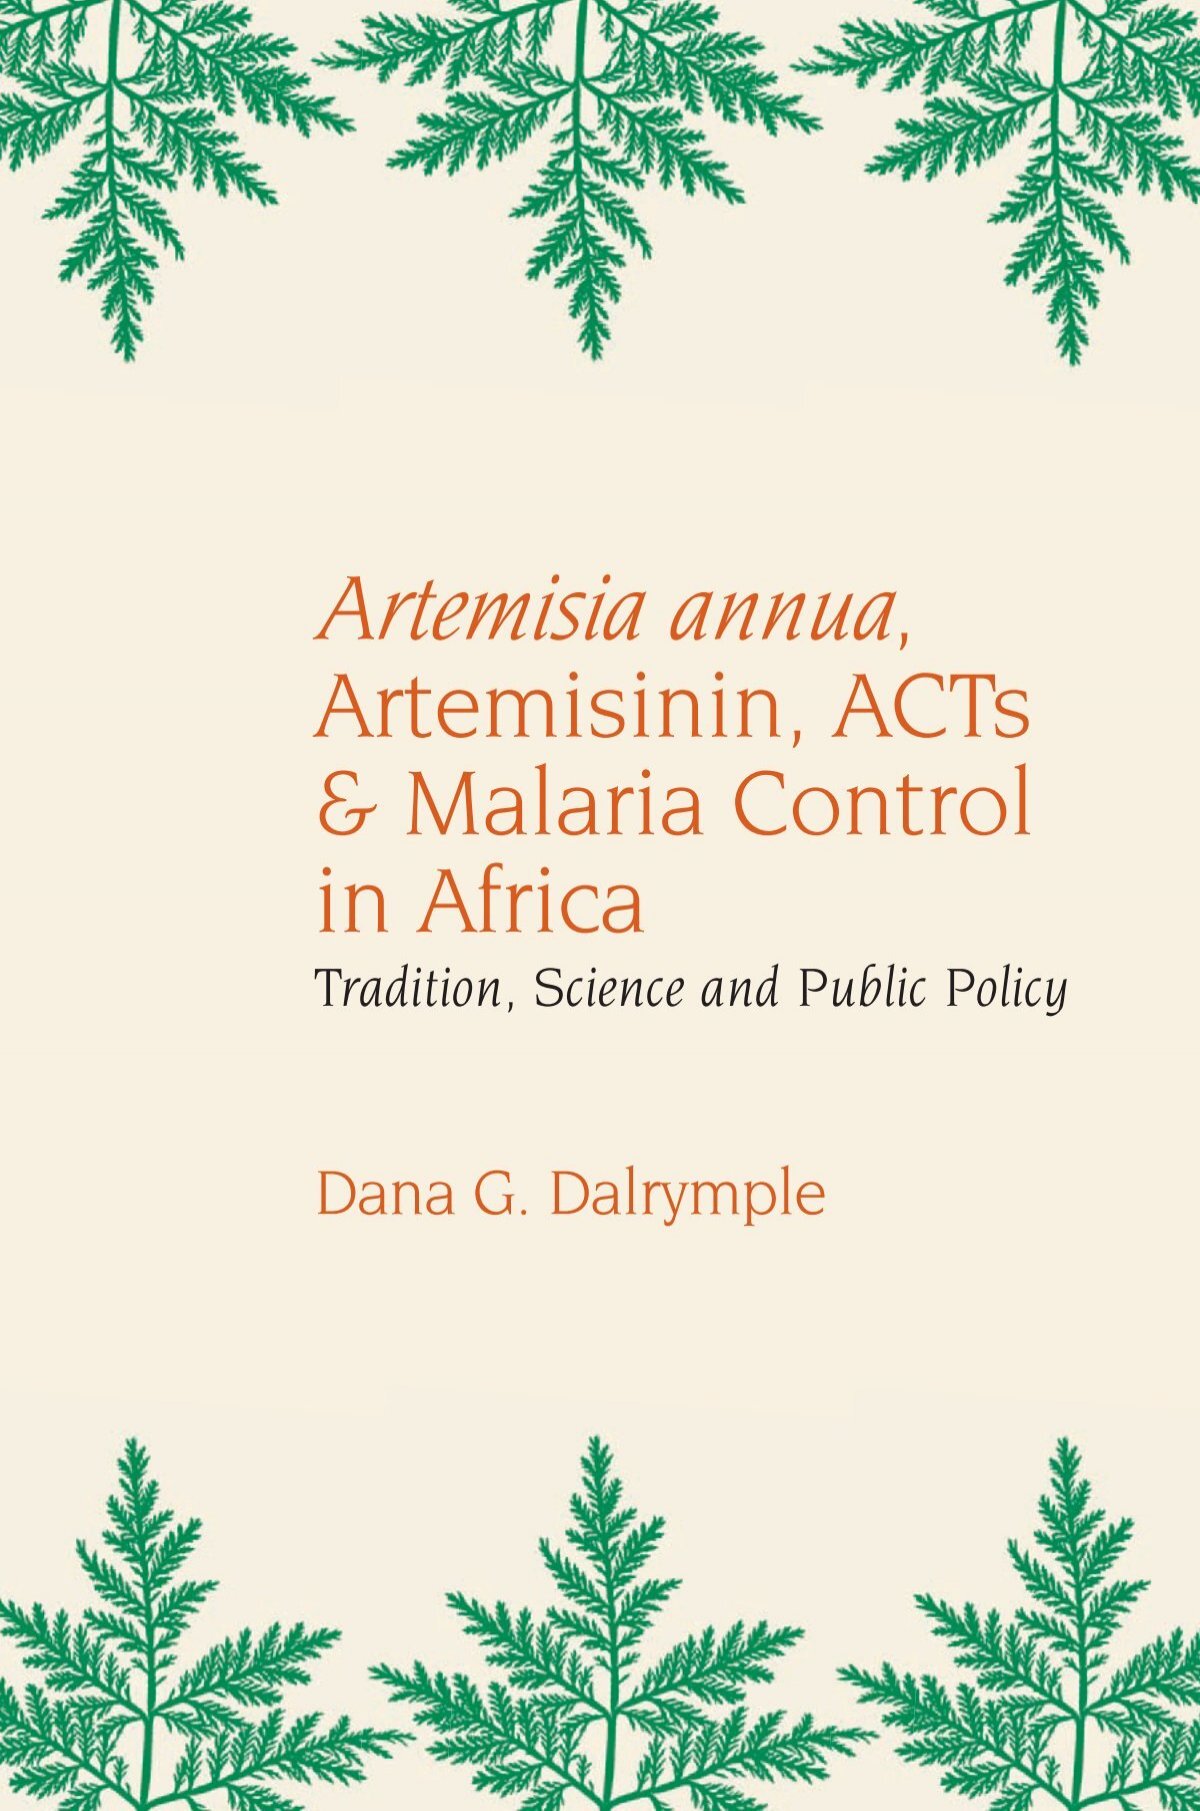 Artemisia annua, - MalariaWorld